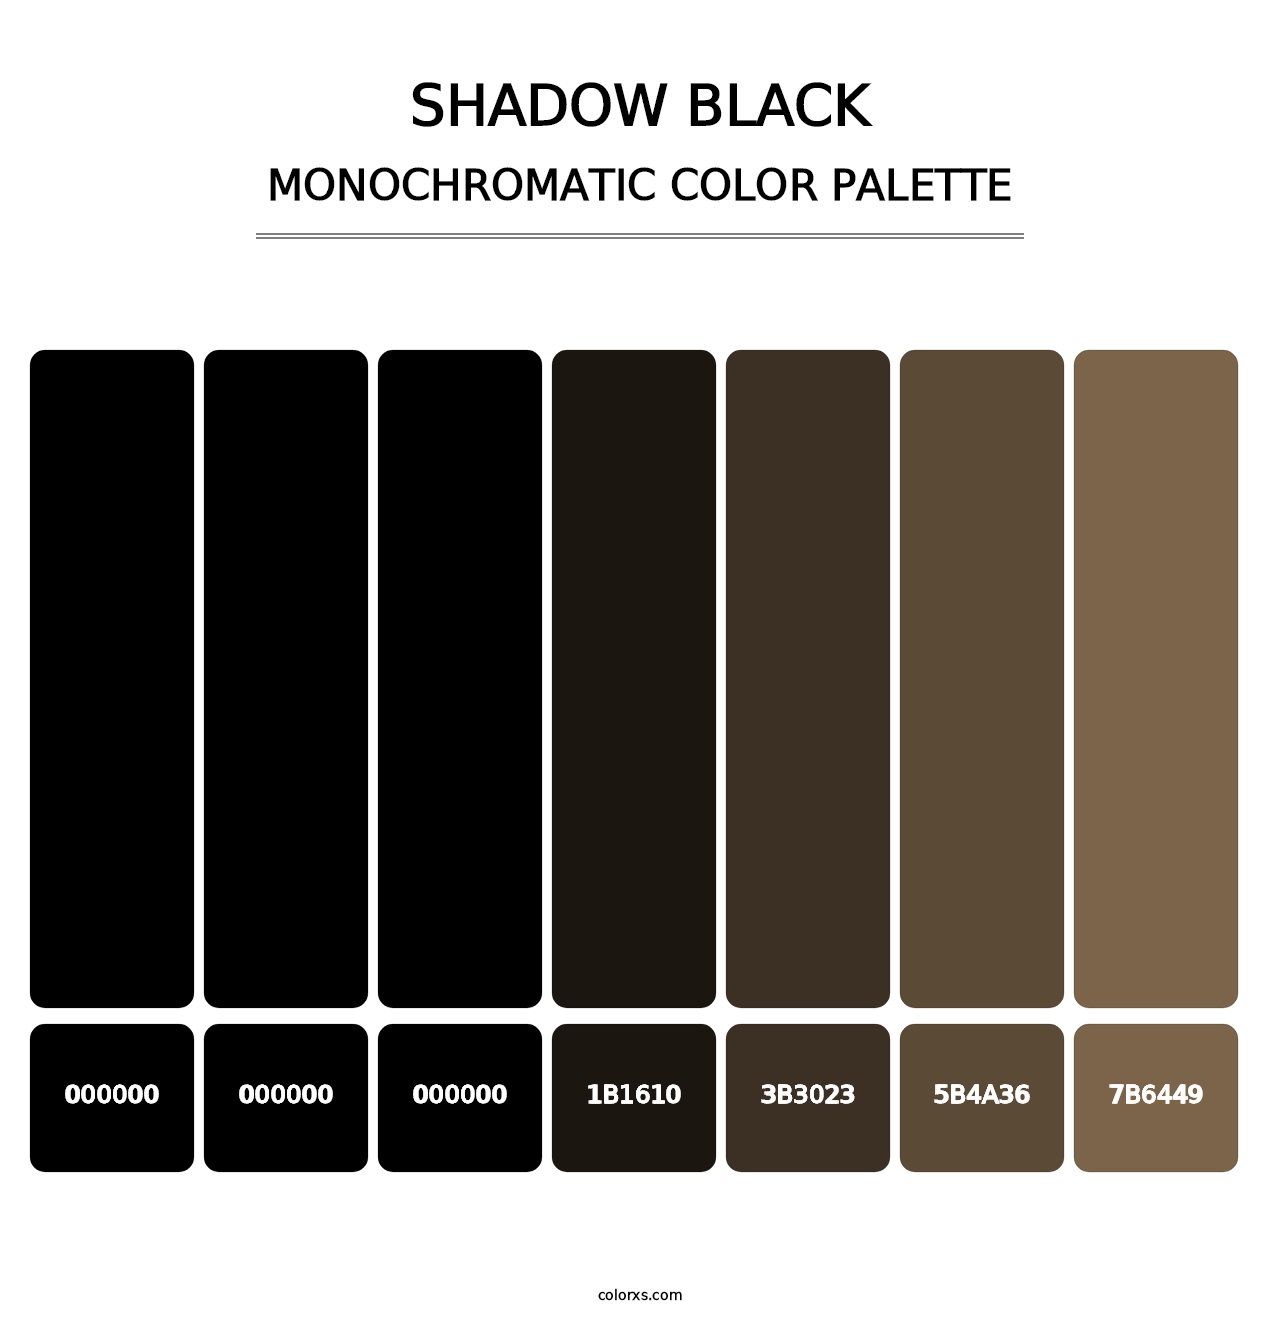 Shadow Black - Monochromatic Color Palette